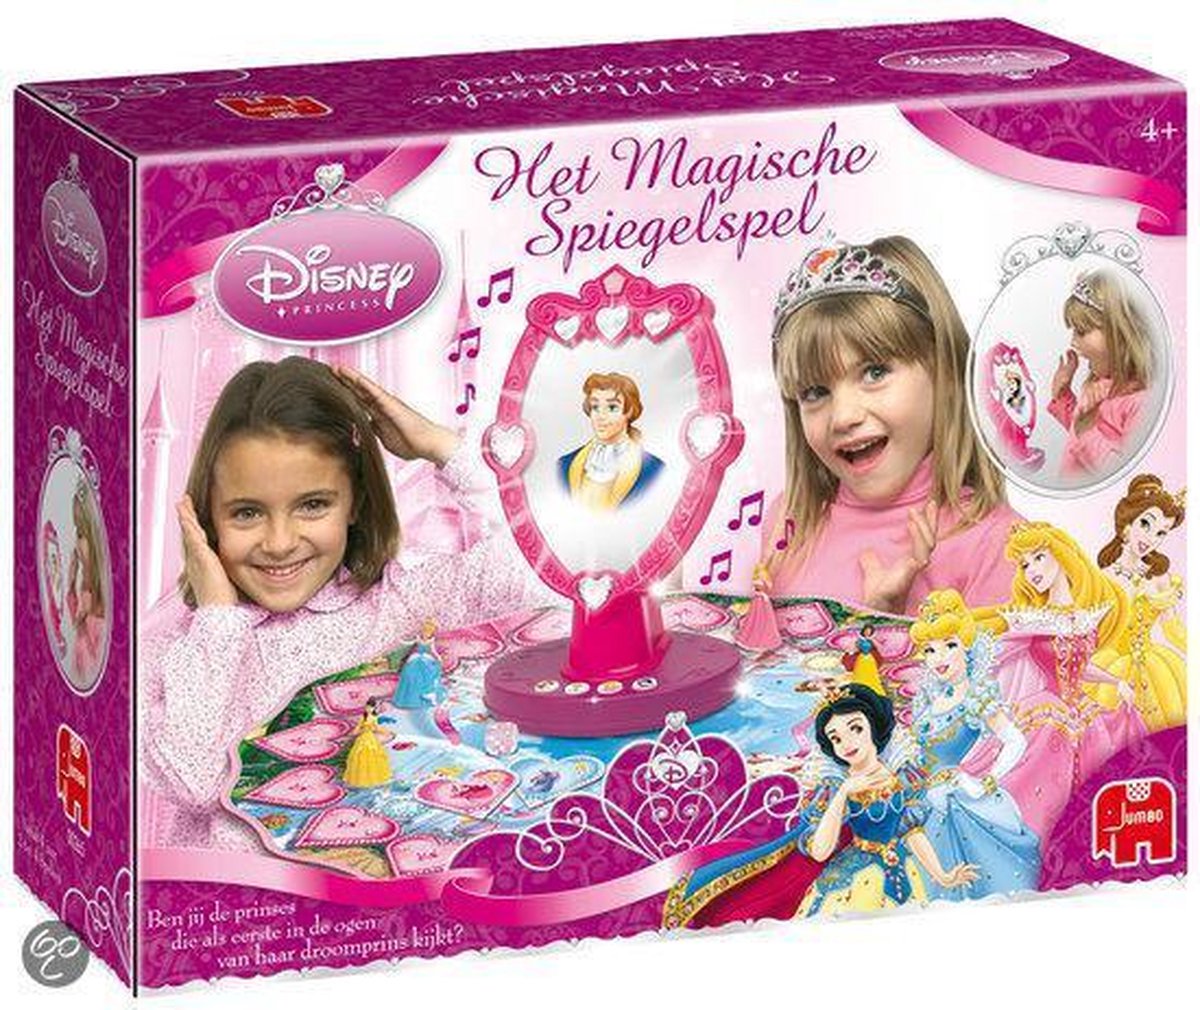 Kostuums beroemd reactie Het Magische Spiegelspel - Disney Princess | Games | bol.com